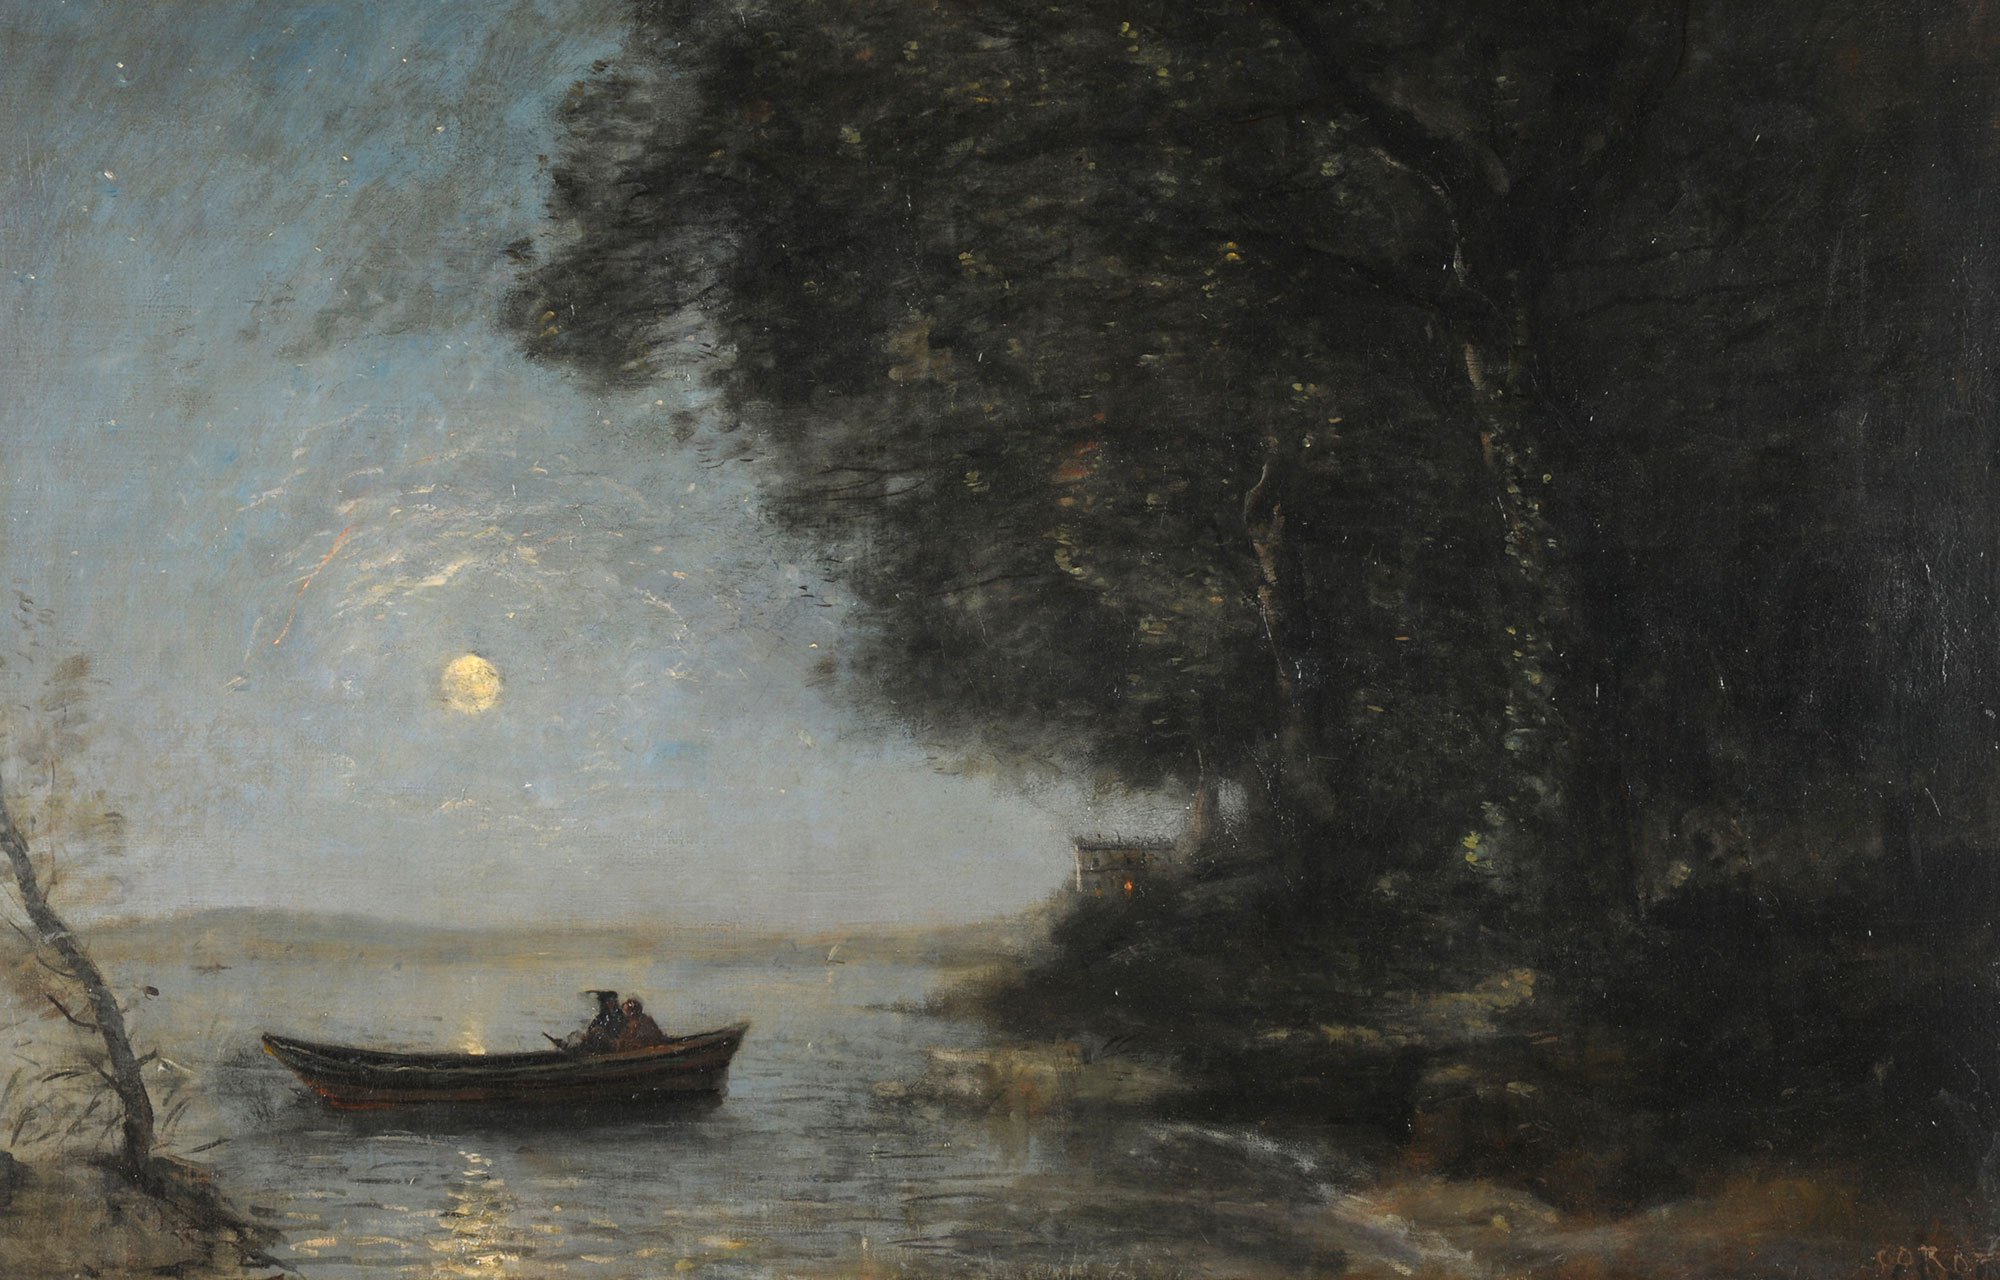 Szene an einem nächtlichem See: Rechts sieht man das dunkel Ufer mit Bäumen. In der Mitte ein kleines Bott mit zwei Fischern. Im Hintergrund sieht man den Vollmond. Das Gemälde ist von Camille Corot.